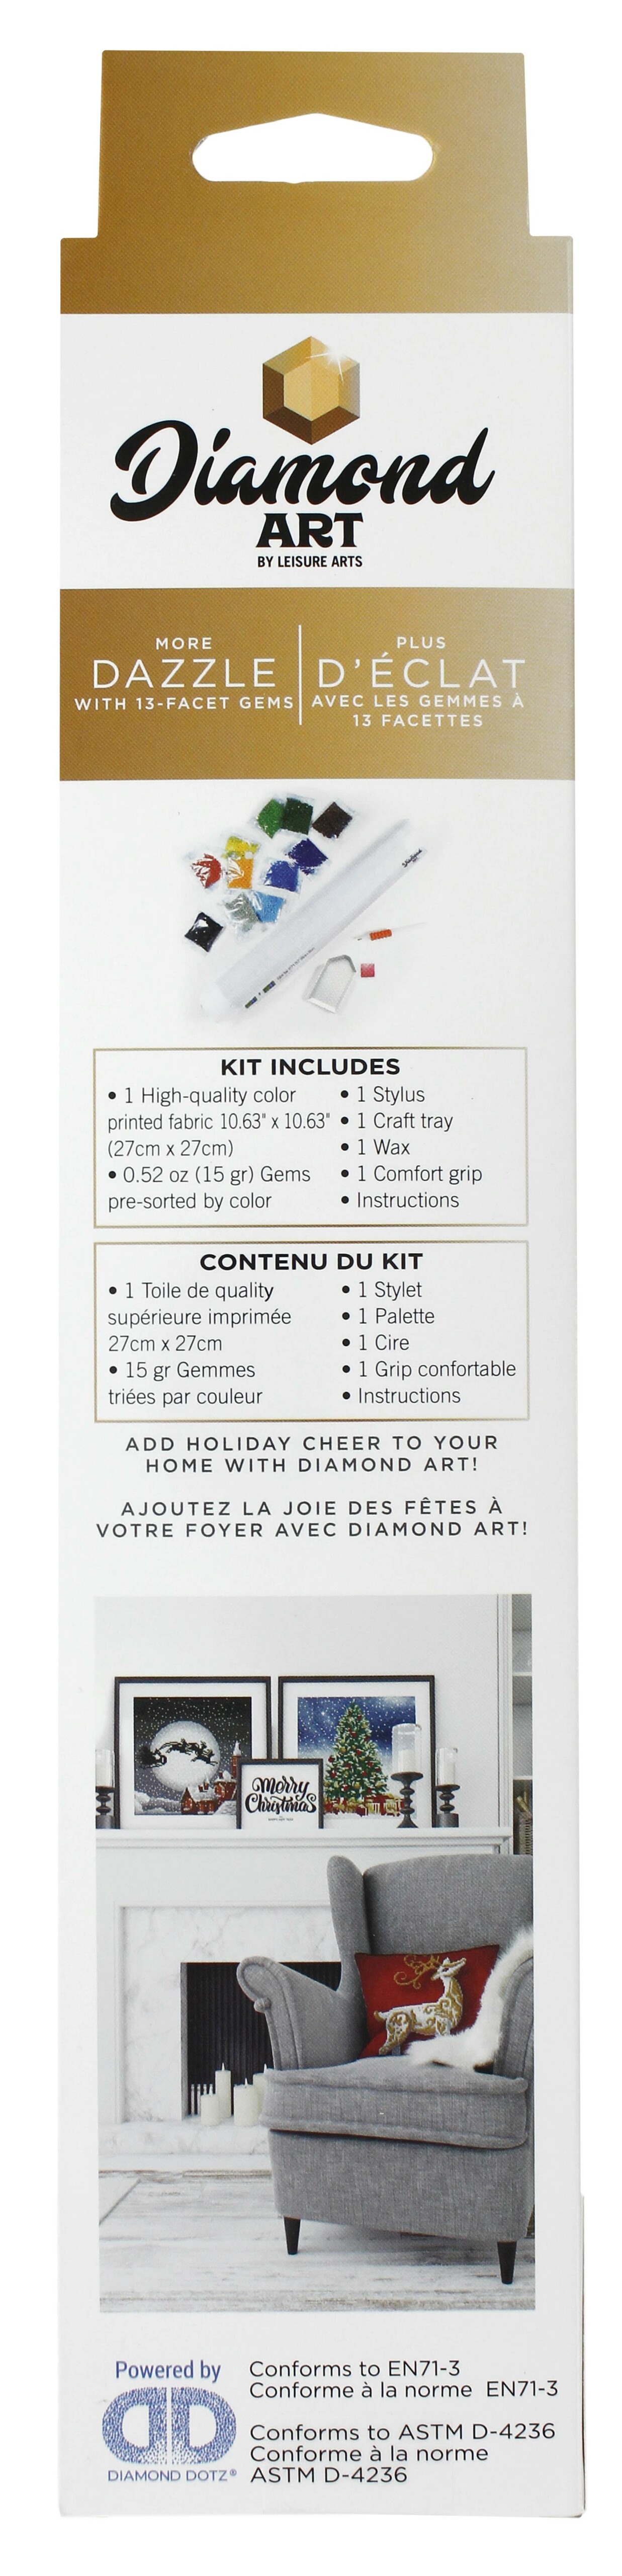 Diamond Art Kit 8x 8 Beginner Stocking - Leisure Arts